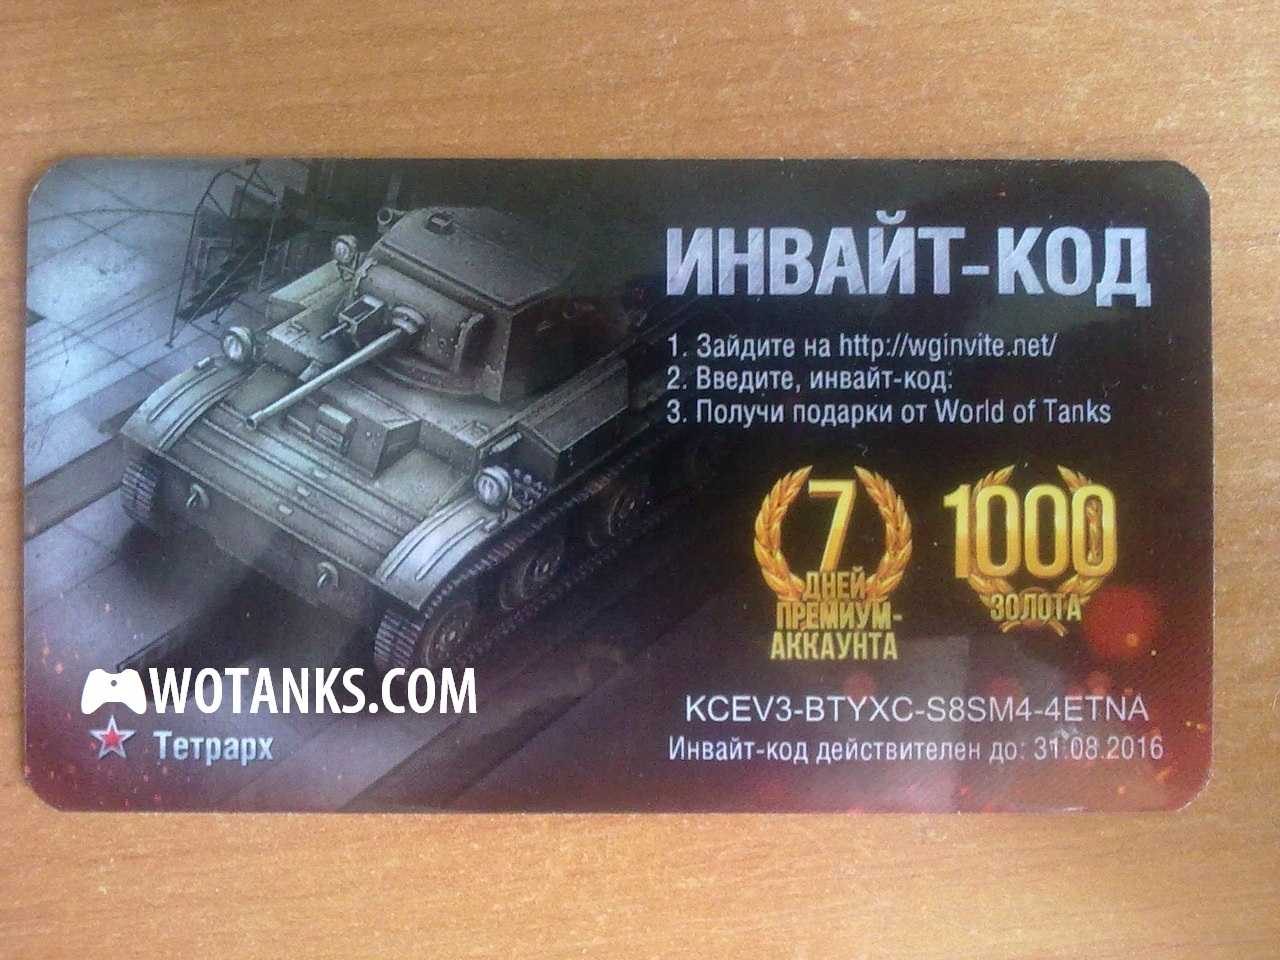 World of tanks blitz отзывы - мобильные приложения - первый независимый сайт отзывов россии